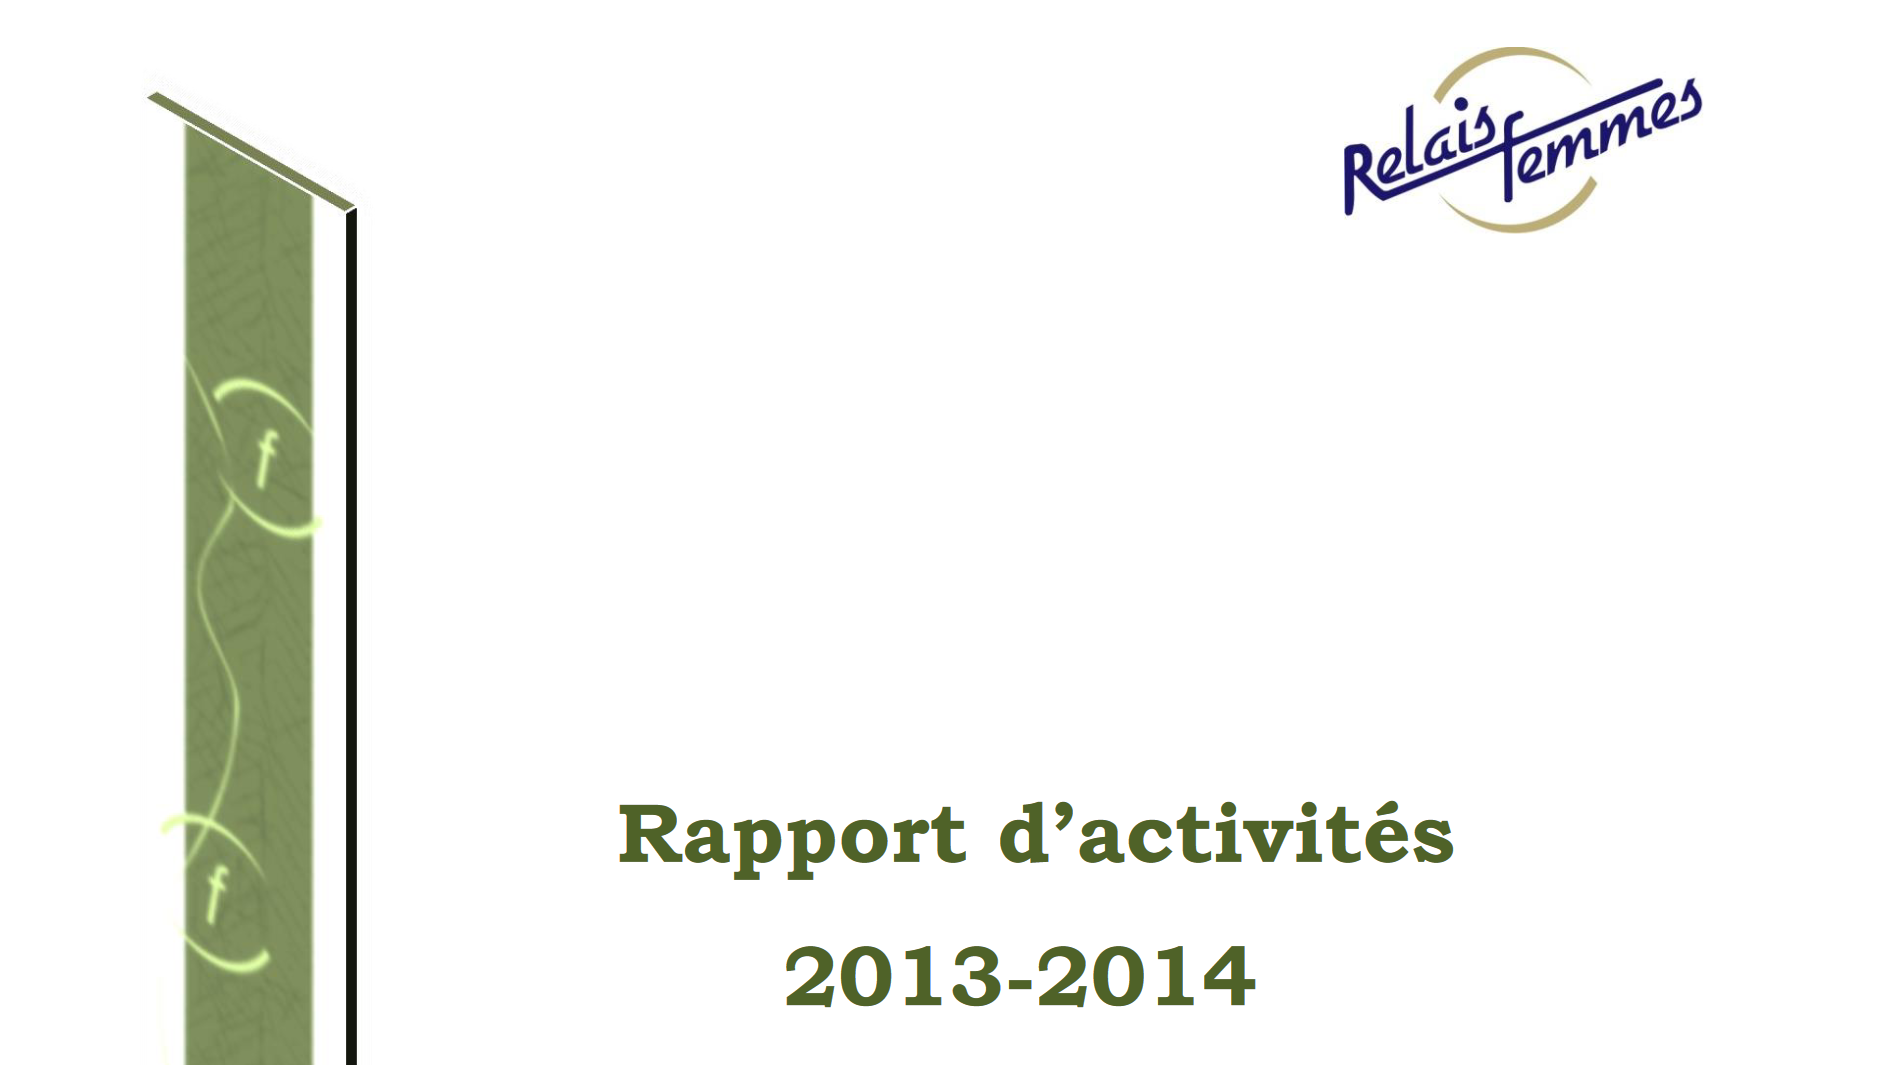 Rapports d'activités 2013-2014